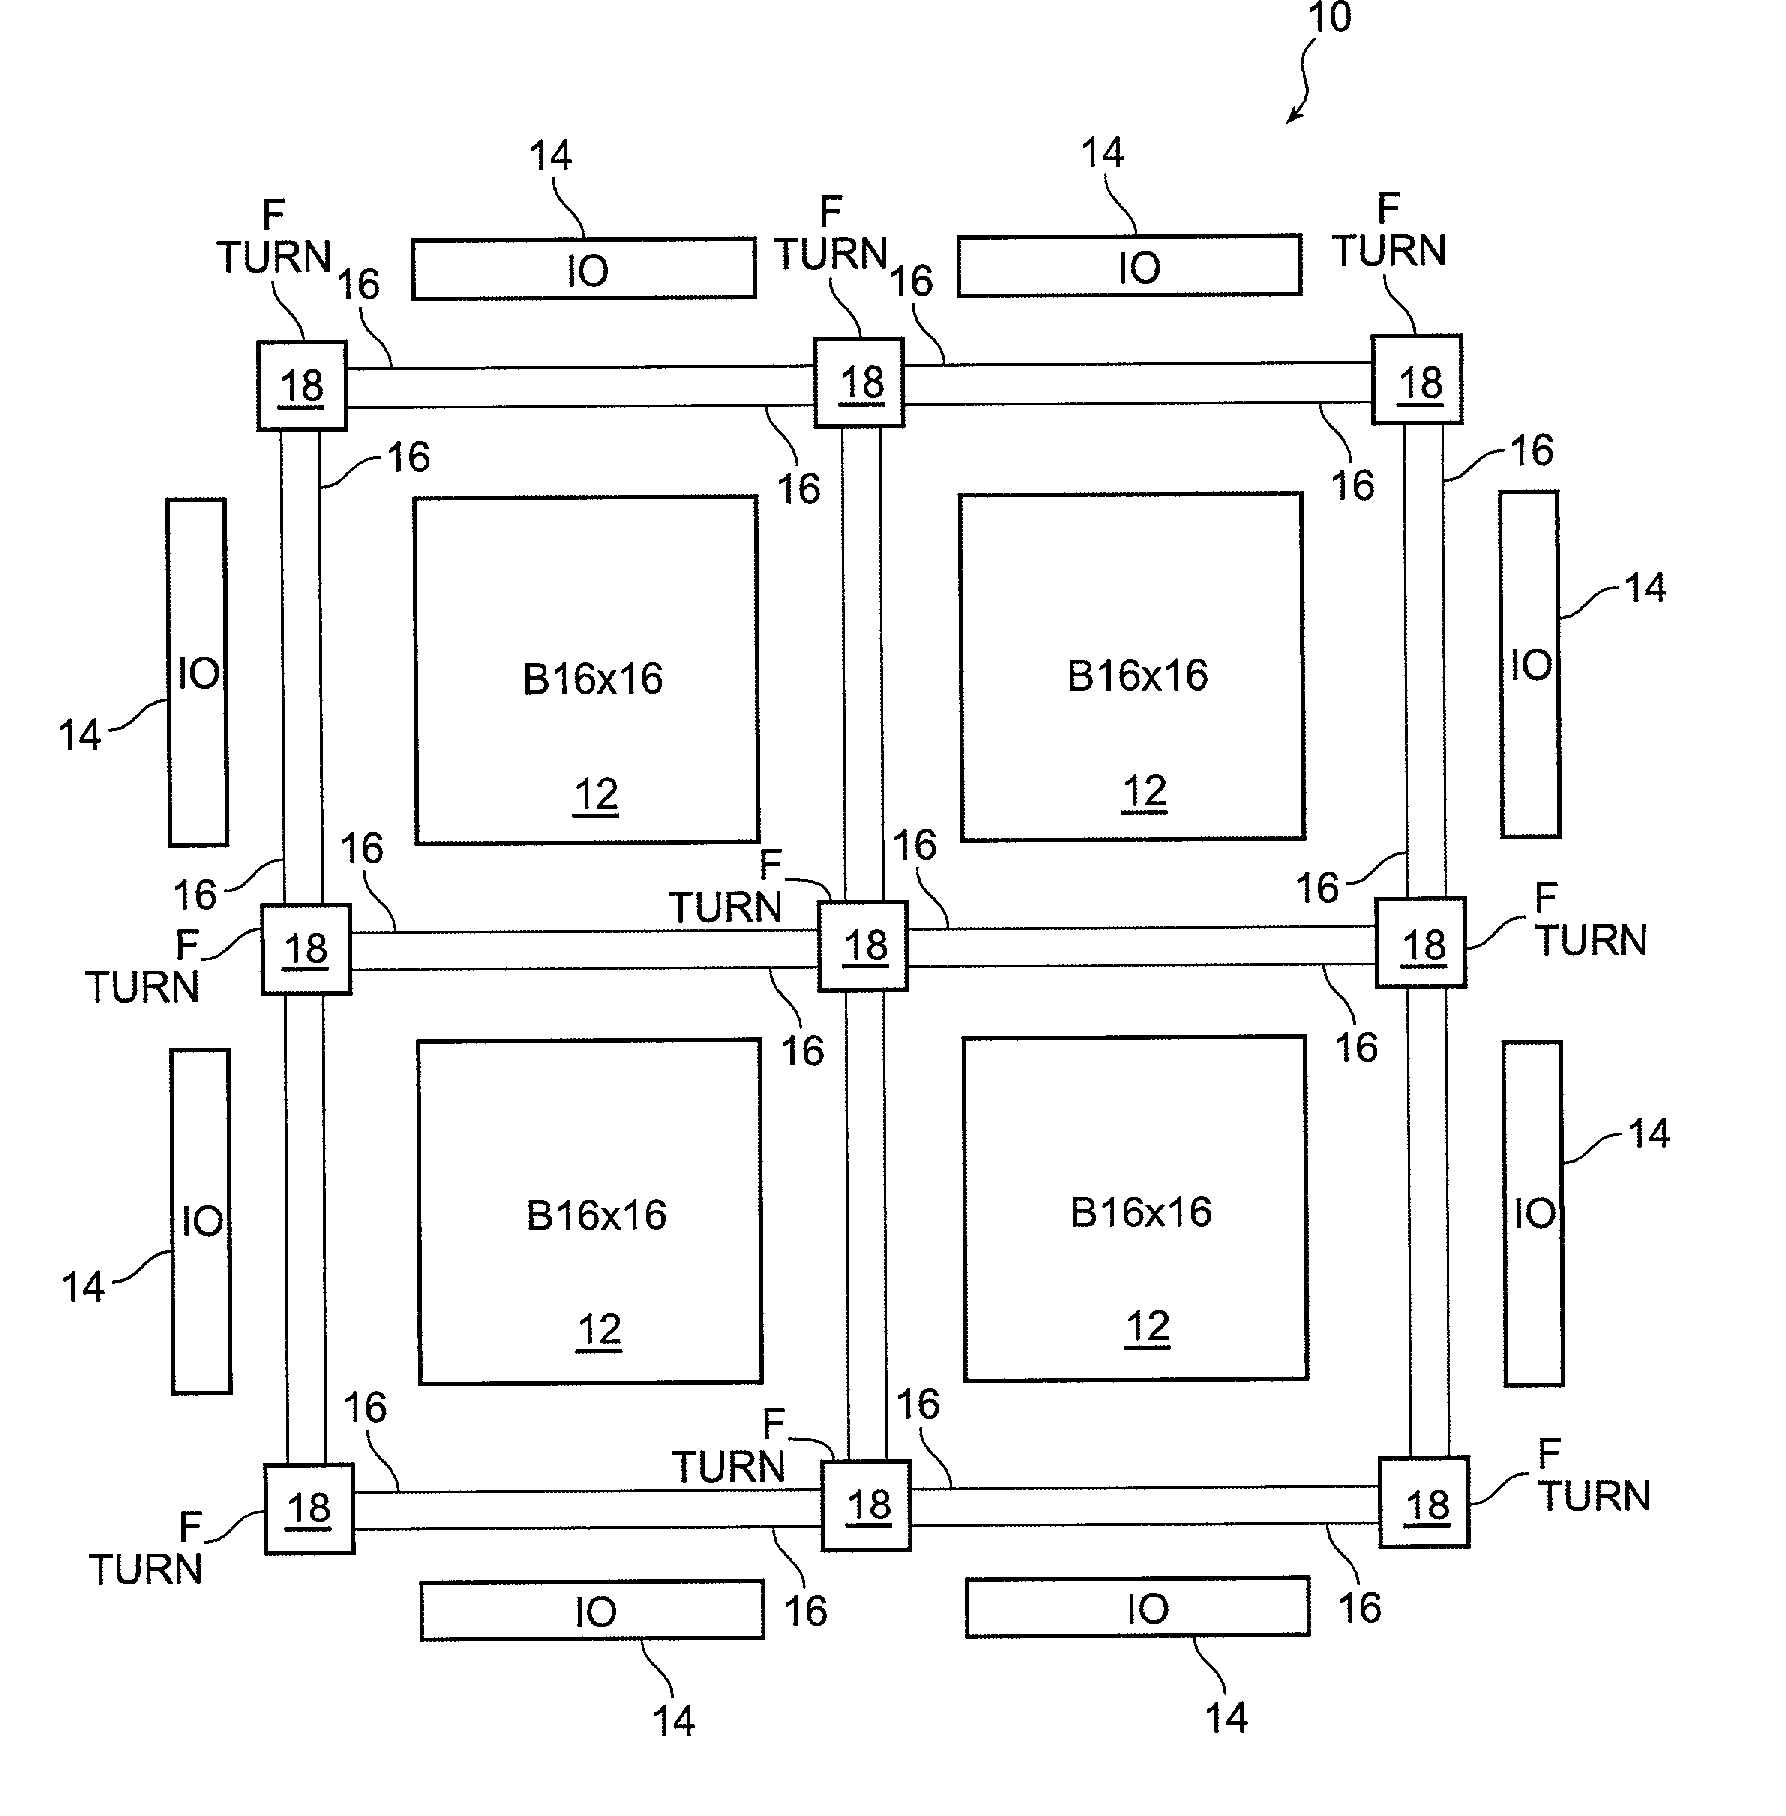 Block connector splitting in logic block of a field programmable gate array